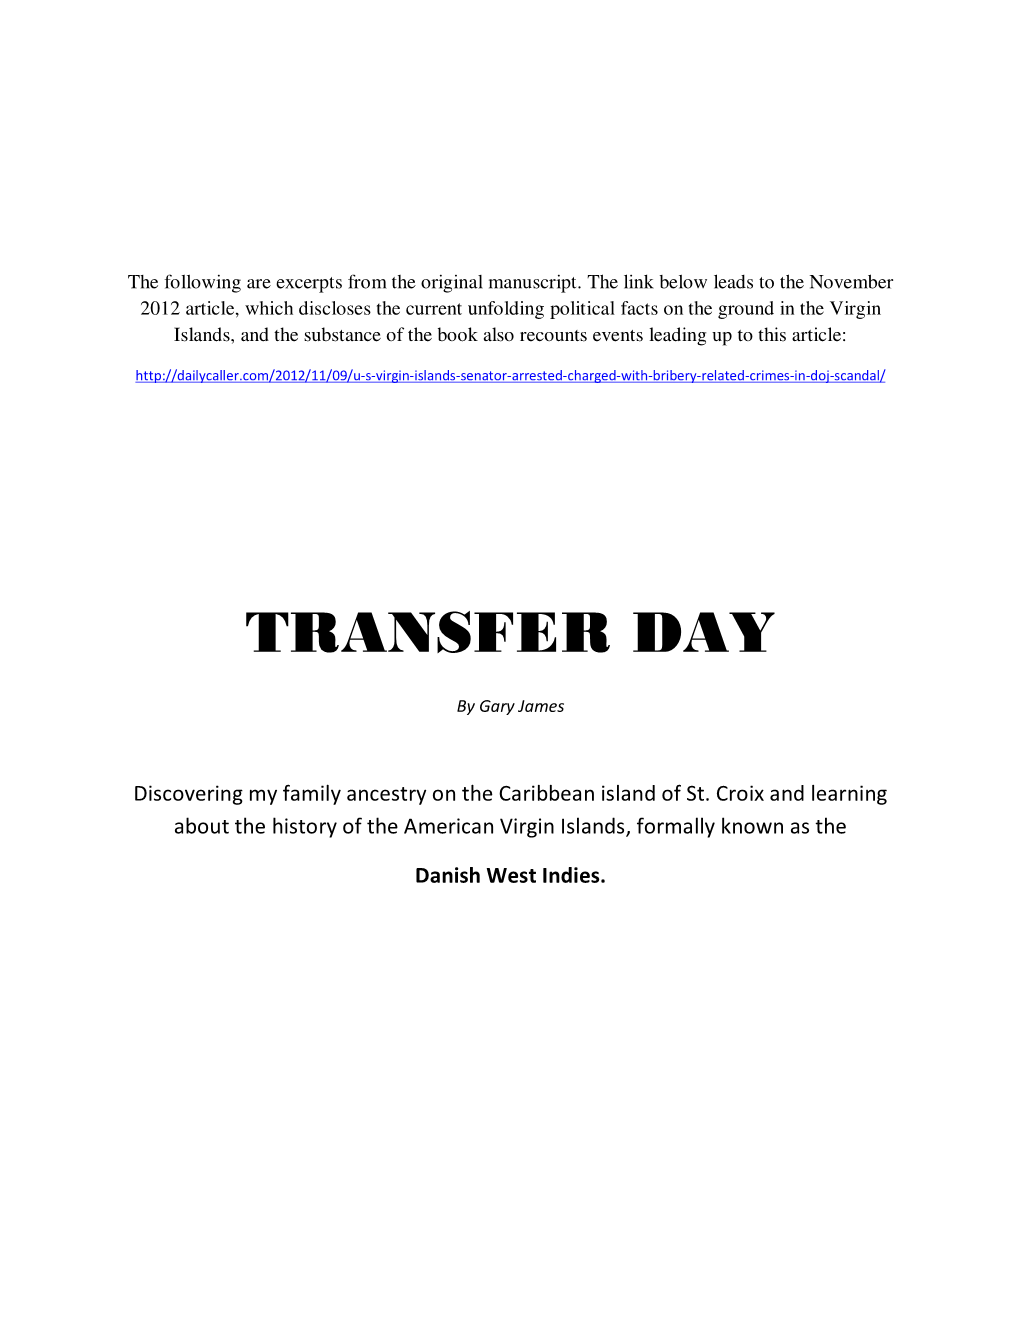 Transfer Day